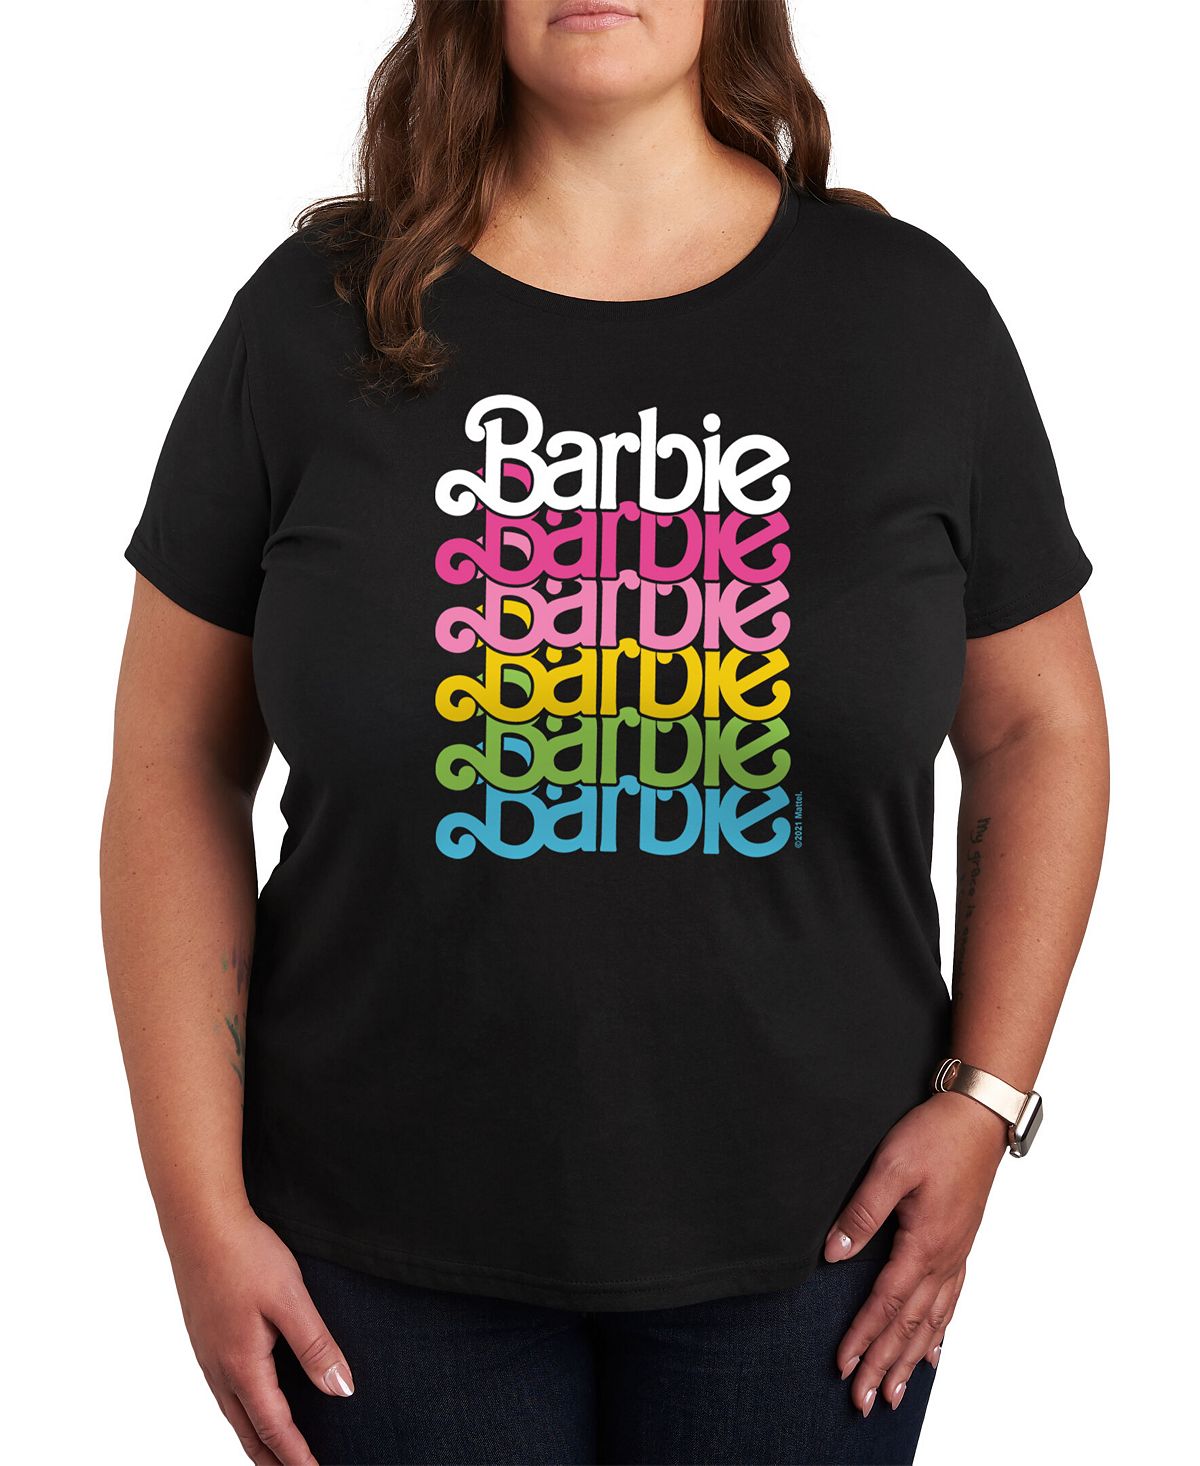 Модная футболка с рисунком Барби больших размеров Air Waves, черный фотографии